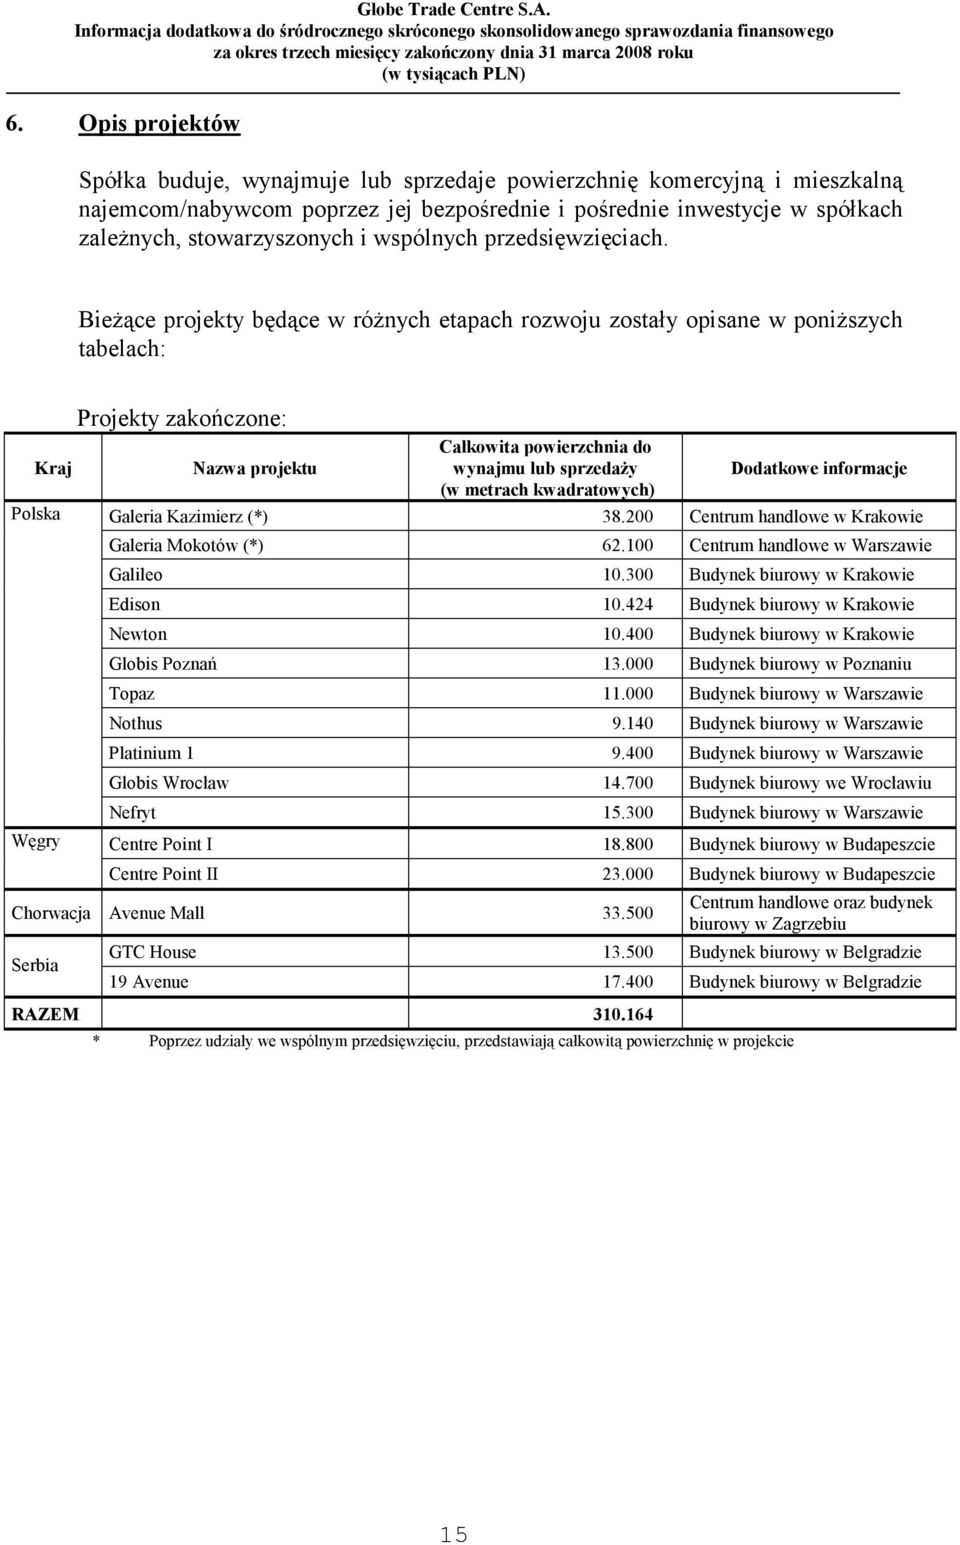 Bieżące projekty będące w różnych etapach rozwoju zostały opisane w poniższych tabelach: Kraj Polska Węgry Projekty zakończone: Nazwa projektu Całkowita powierzchnia do wynajmu lub sprzedaży (w